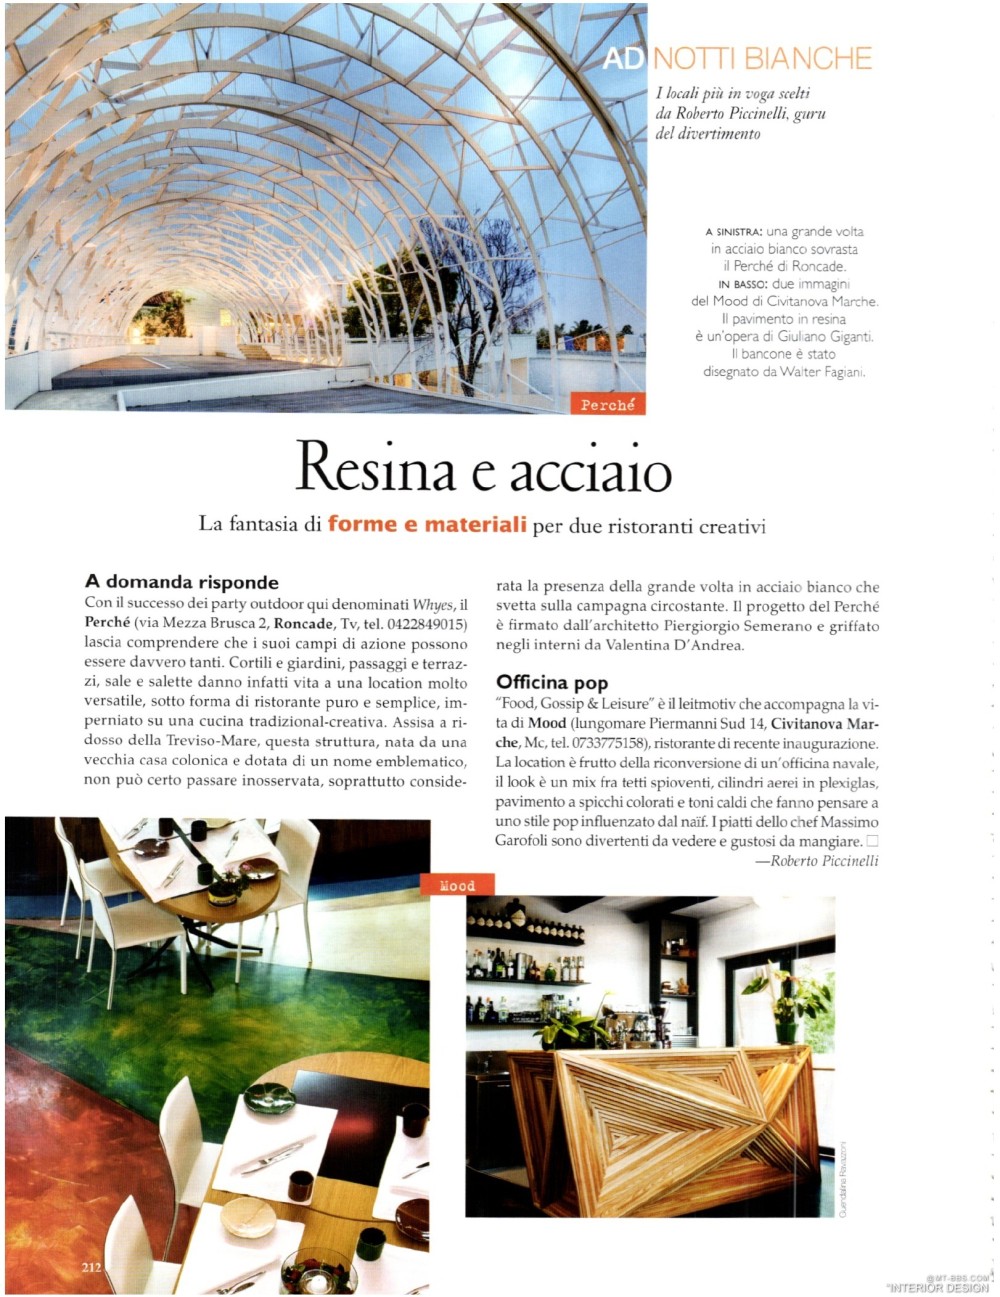 意大利AD 杂志 2012年全年JPG高清版本 全免（上传完毕）_0214.jpg